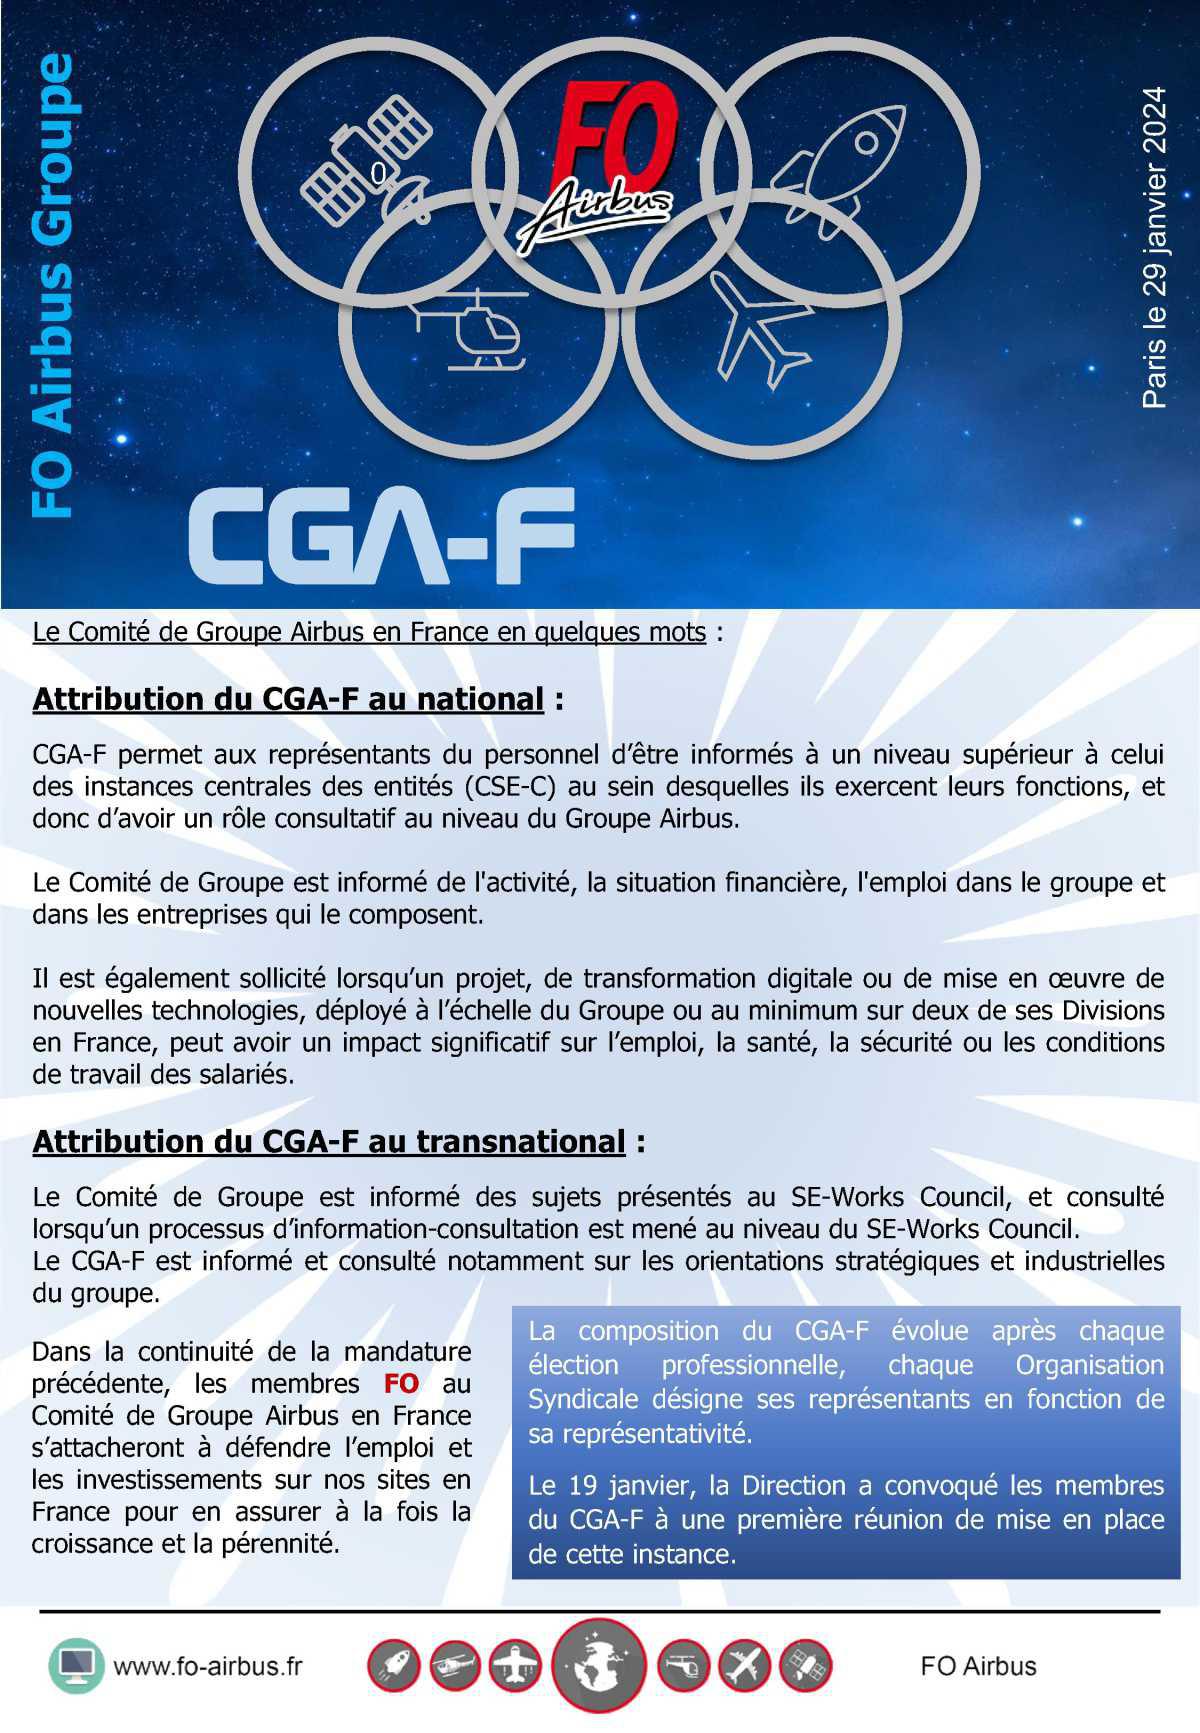 Les membres du CGA-F (Comité de Groupe Airbus en France)